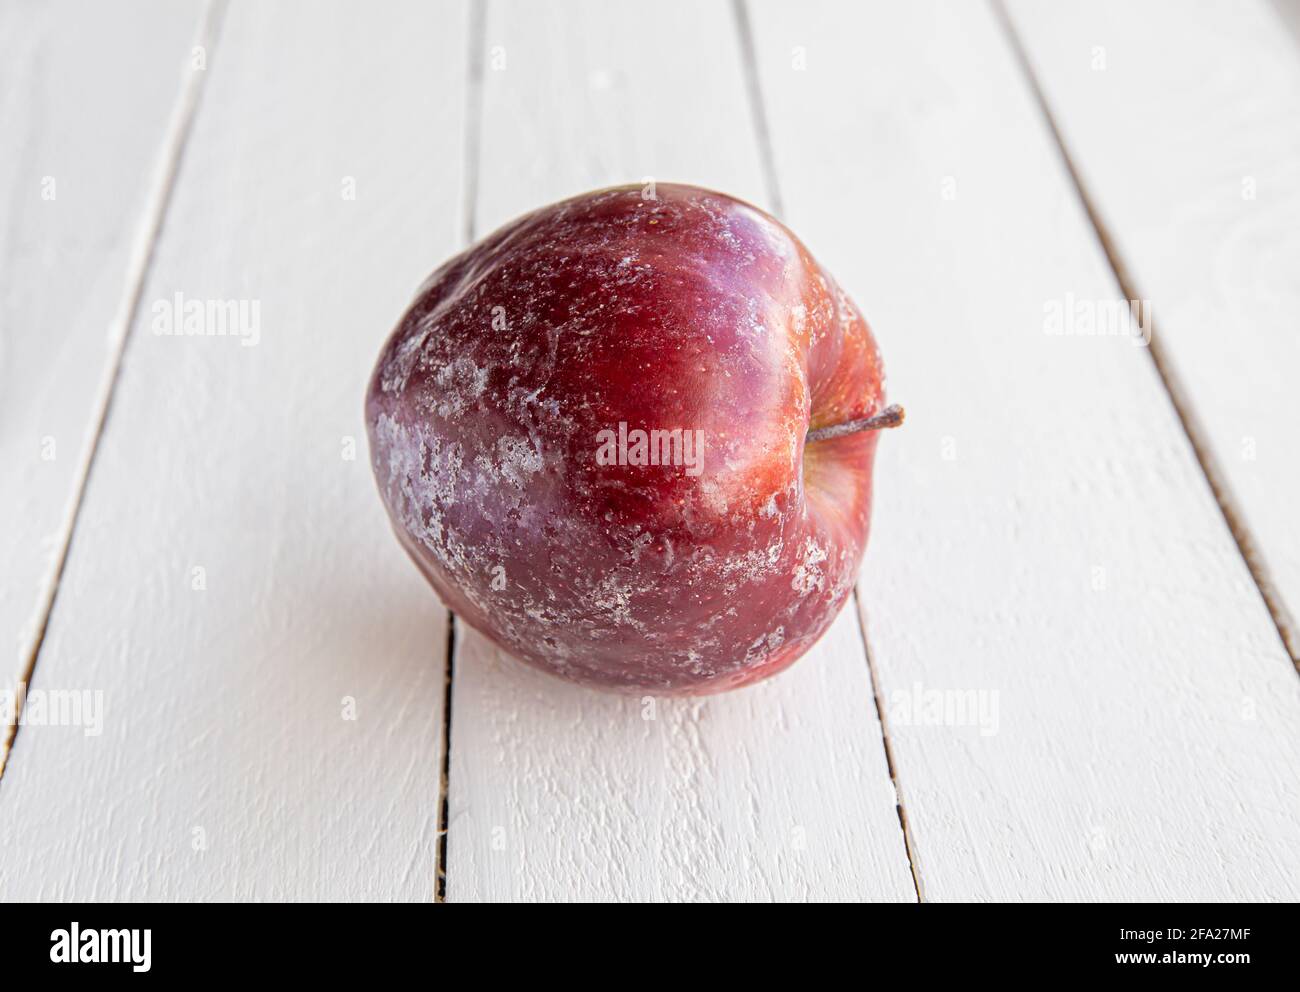 Pomme rouge avec couche blanche de cire de protection se dissolvant partiellement après avoir lavé la pomme à la maison. Avant de vendre en magasin, ils appliquent de la cire. Banque D'Images